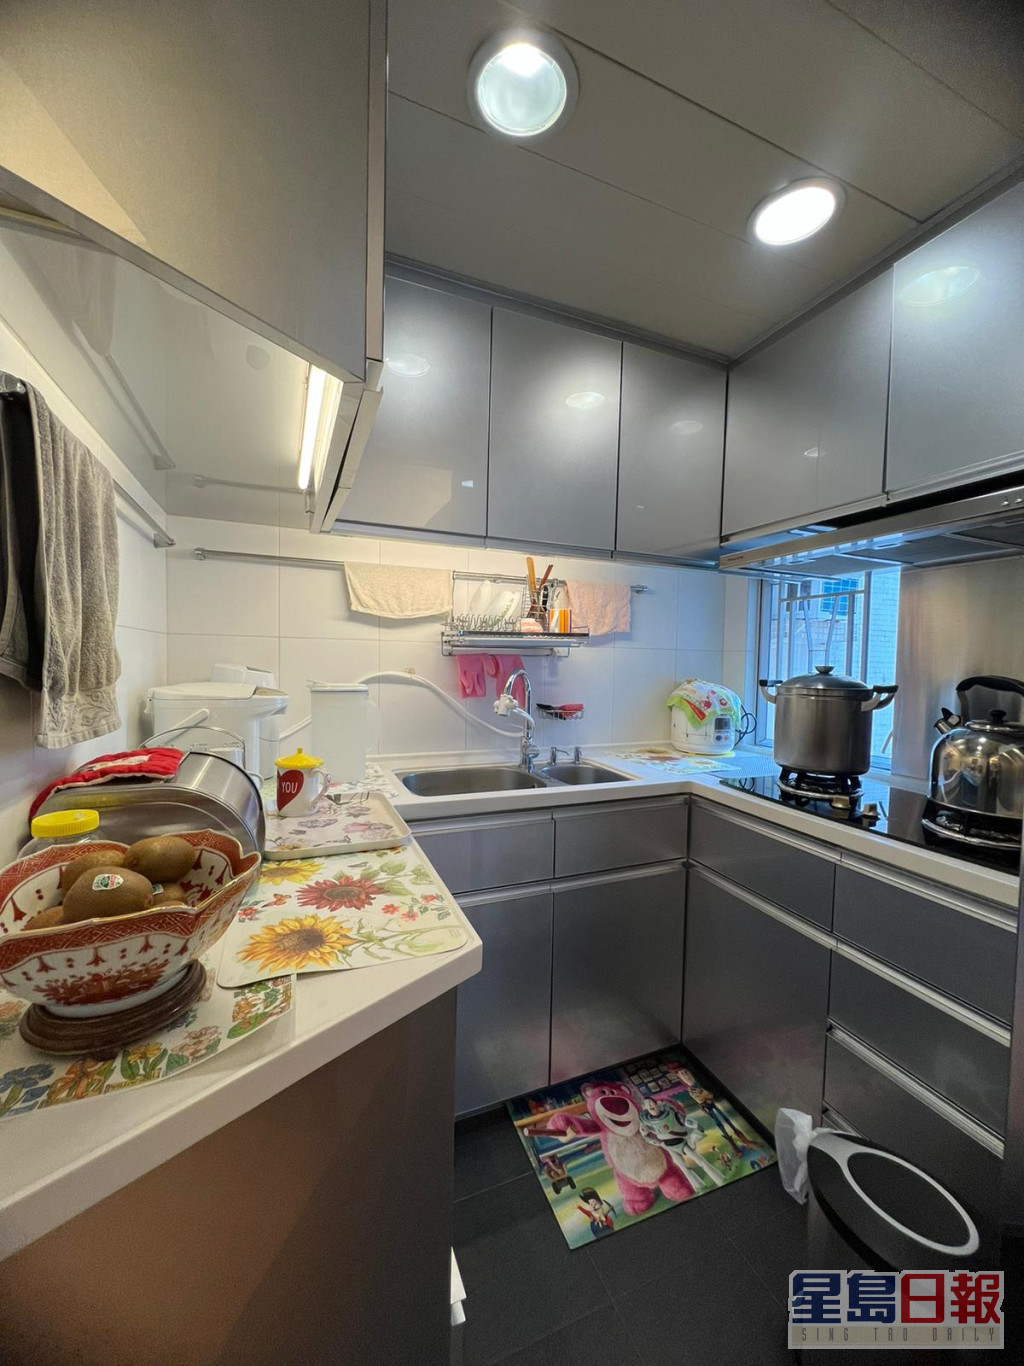 廚房的洗滌、備餐及烹調空間分布有置。